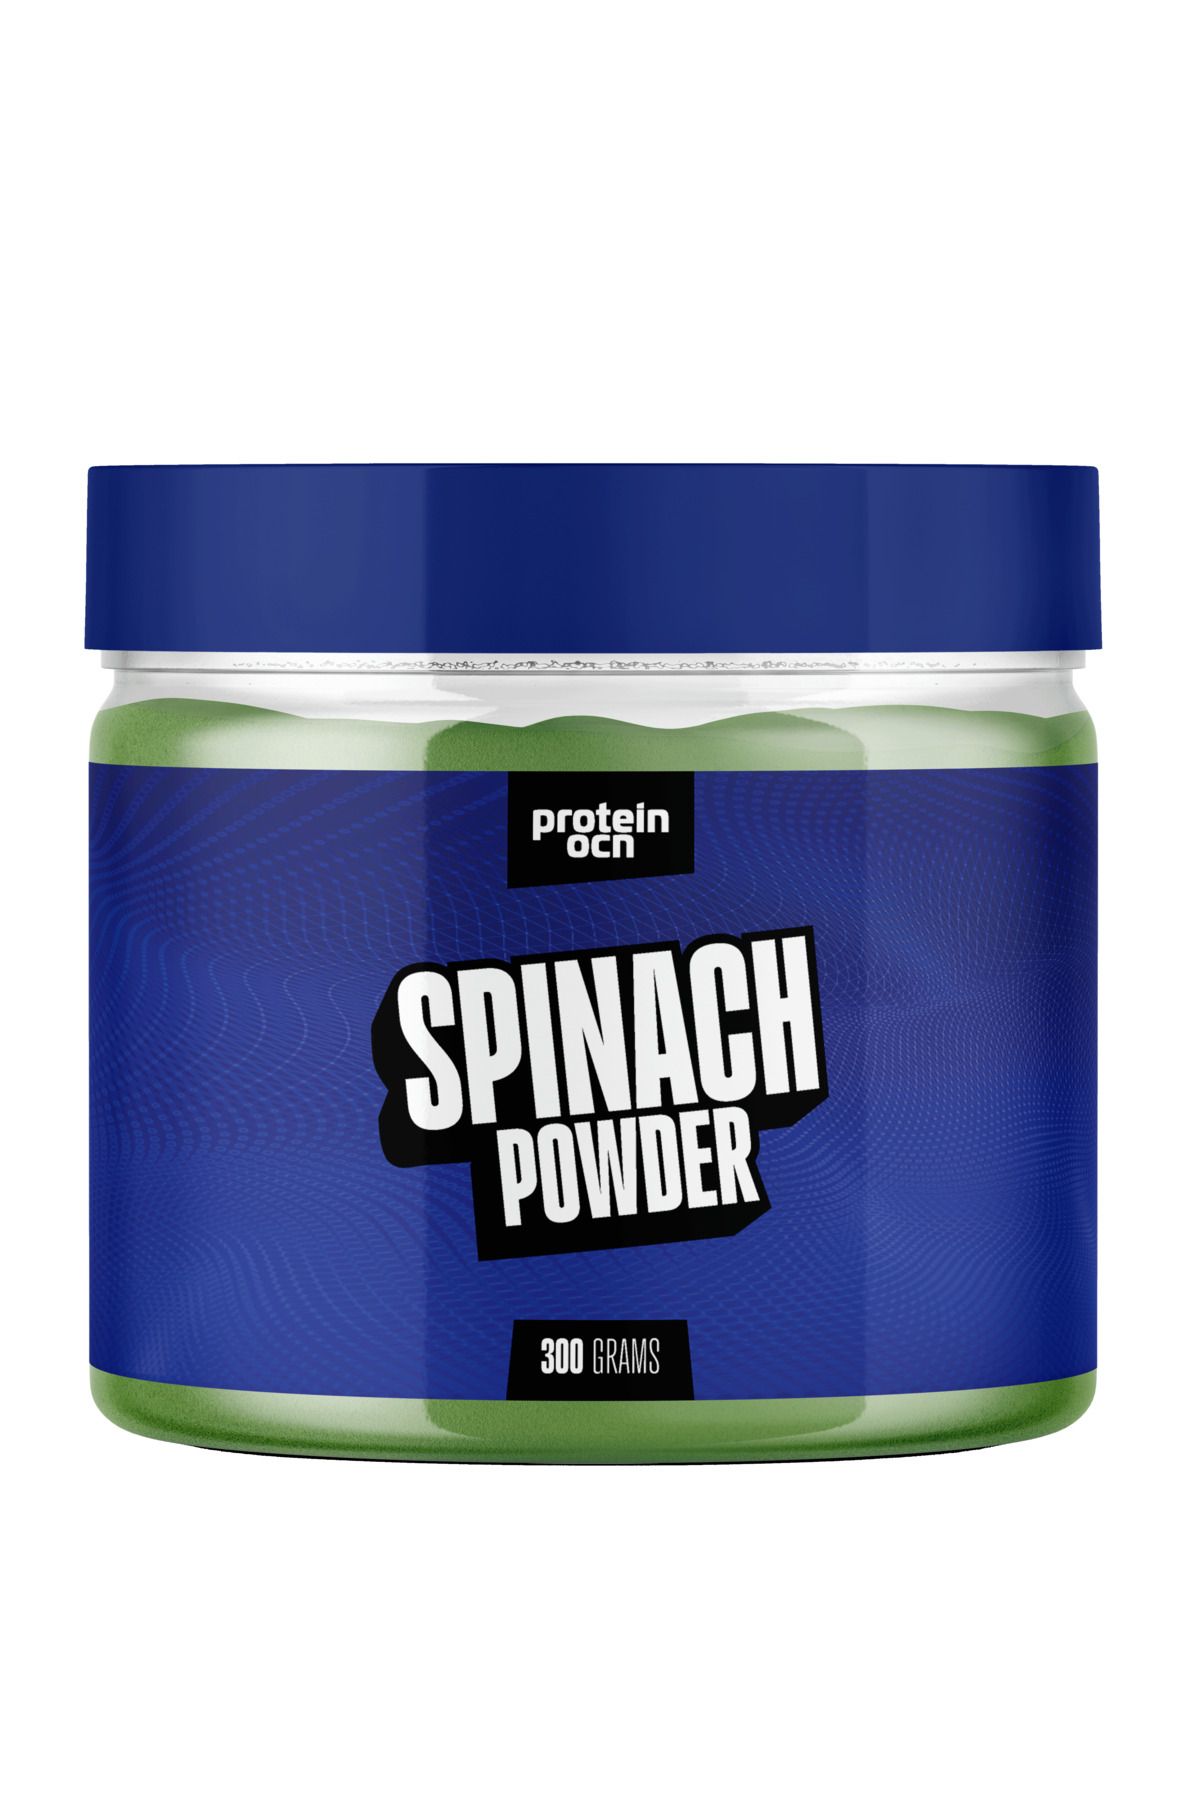 Proteinocean Spinach Powder 300g - 30 Servis